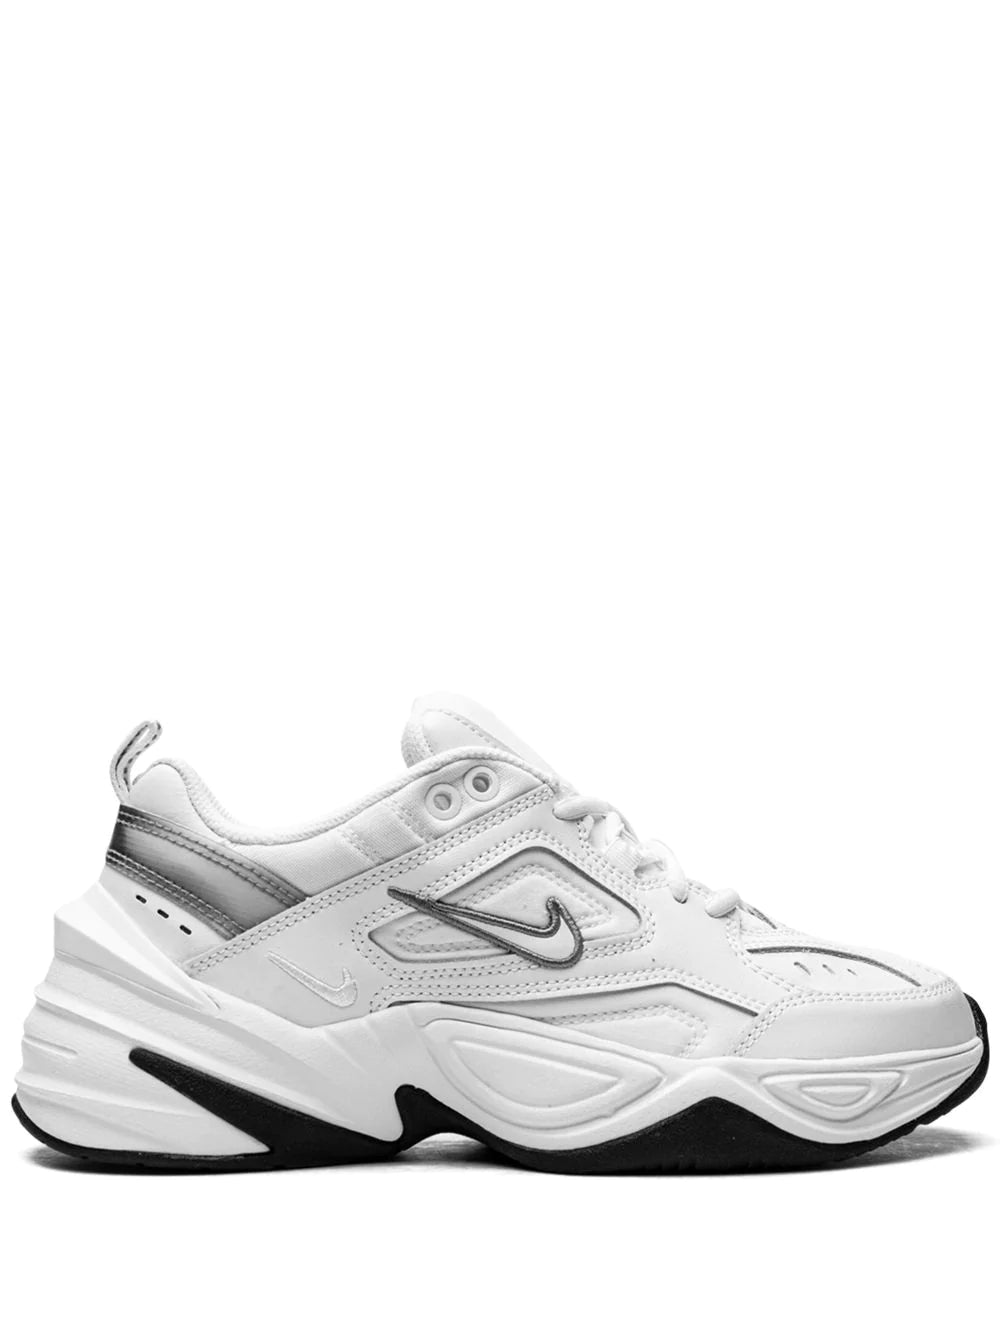 Nike M2K Tekno "White/Cool Grey/Black" sneakers | Women